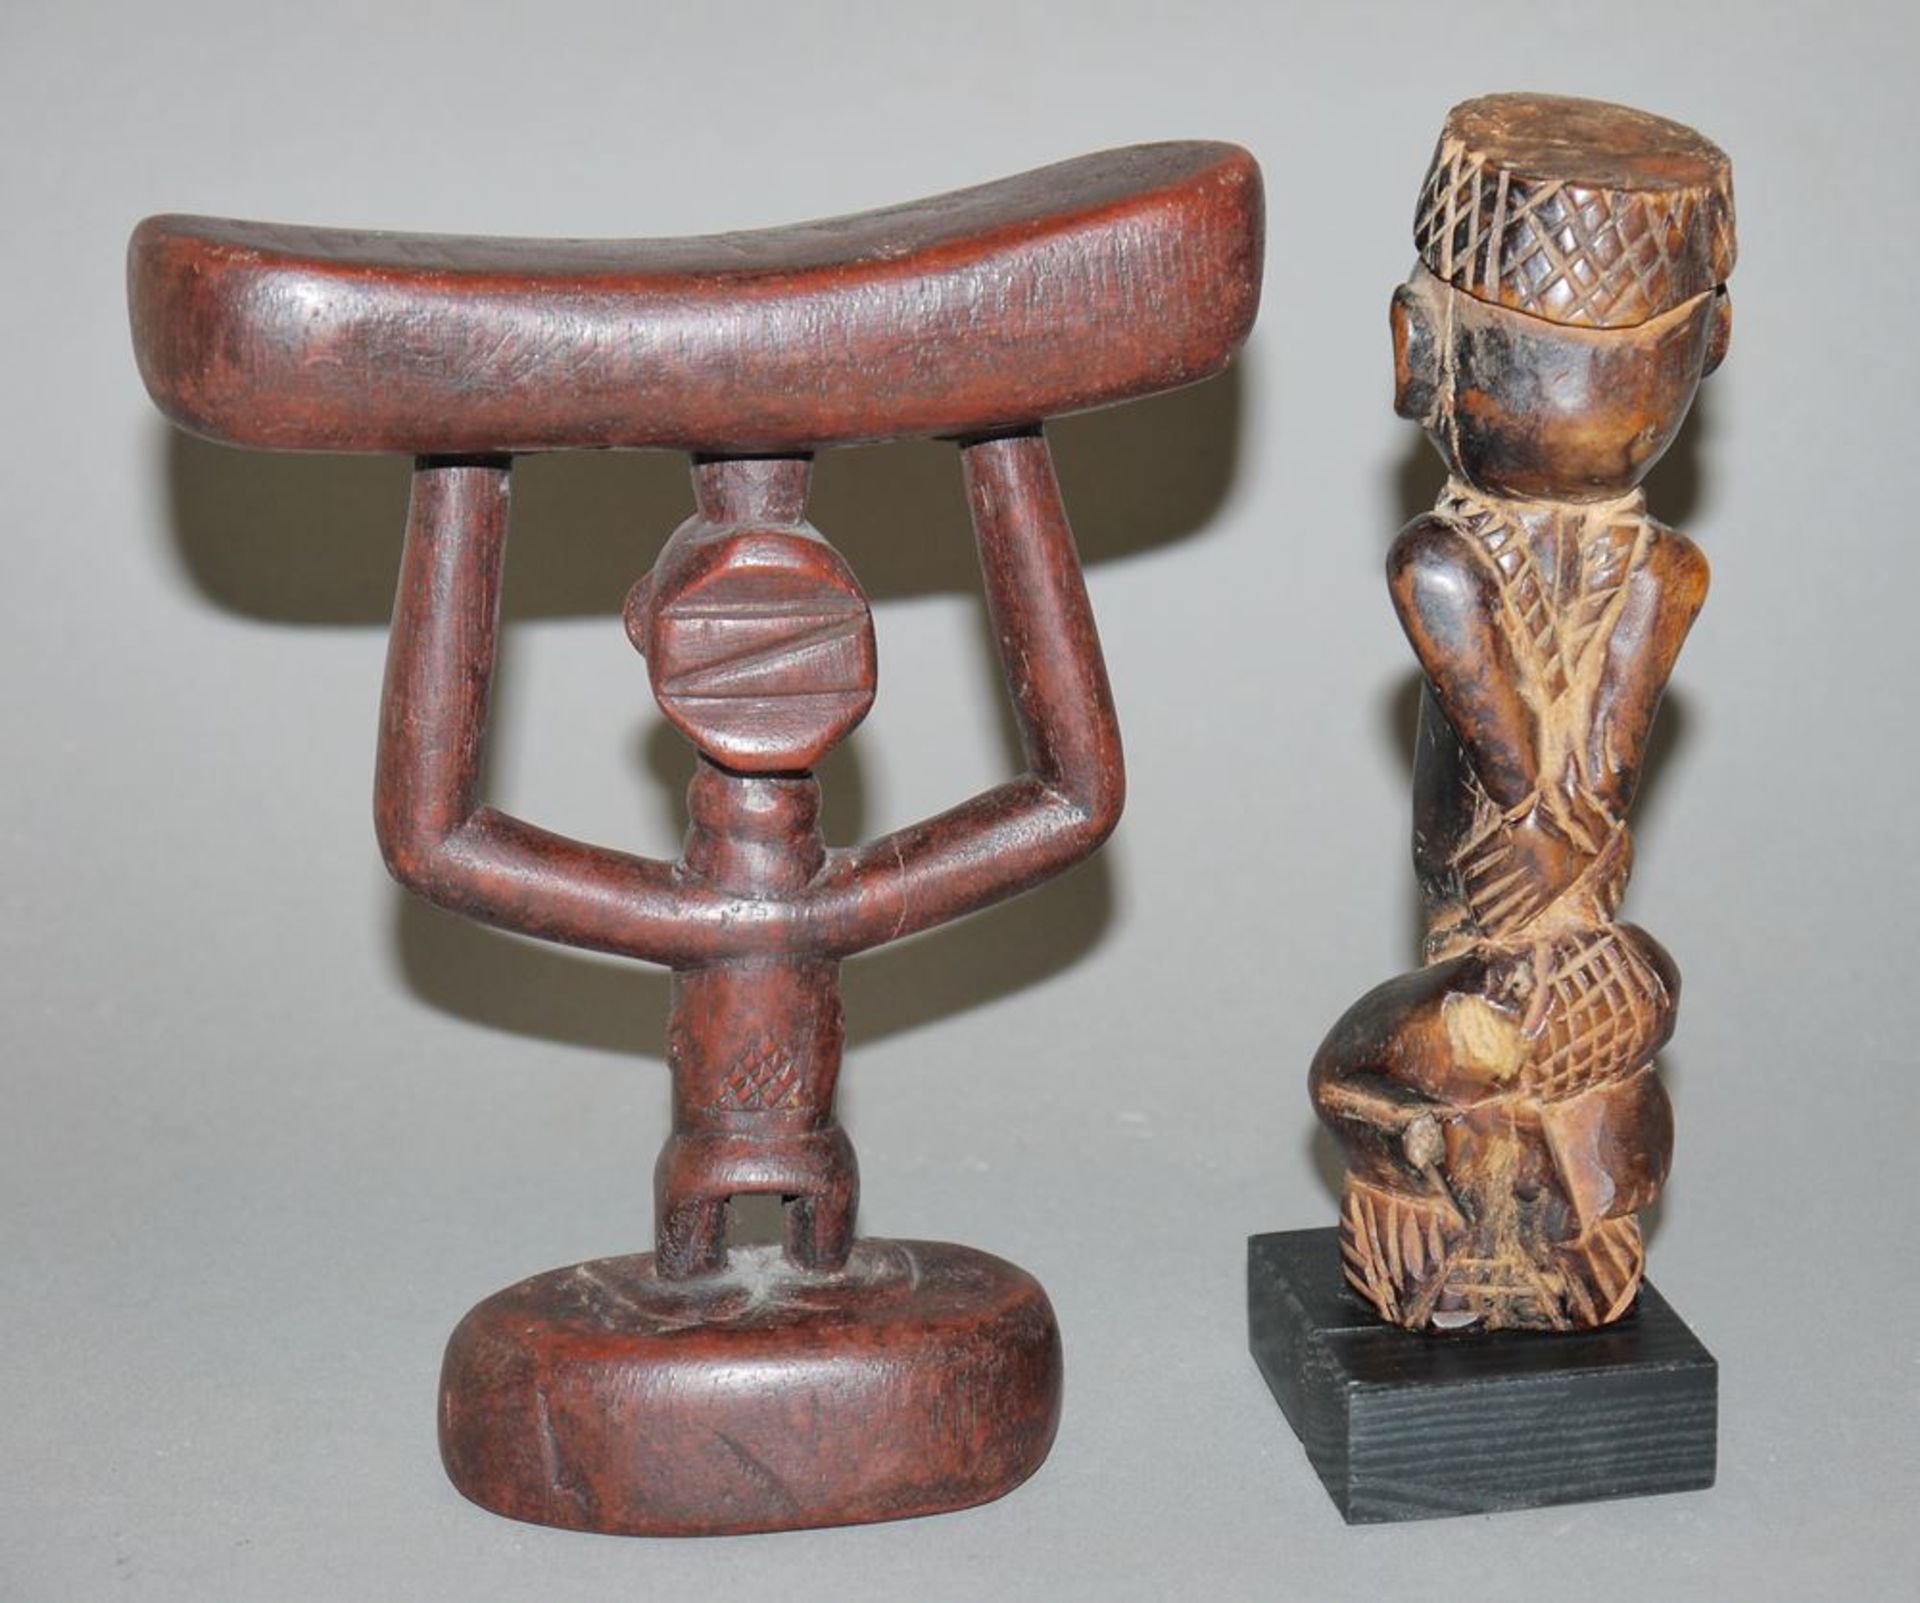 Kopfstütze der Luba und Sklavenfigur der Yombe, Kongo - Image 2 of 2